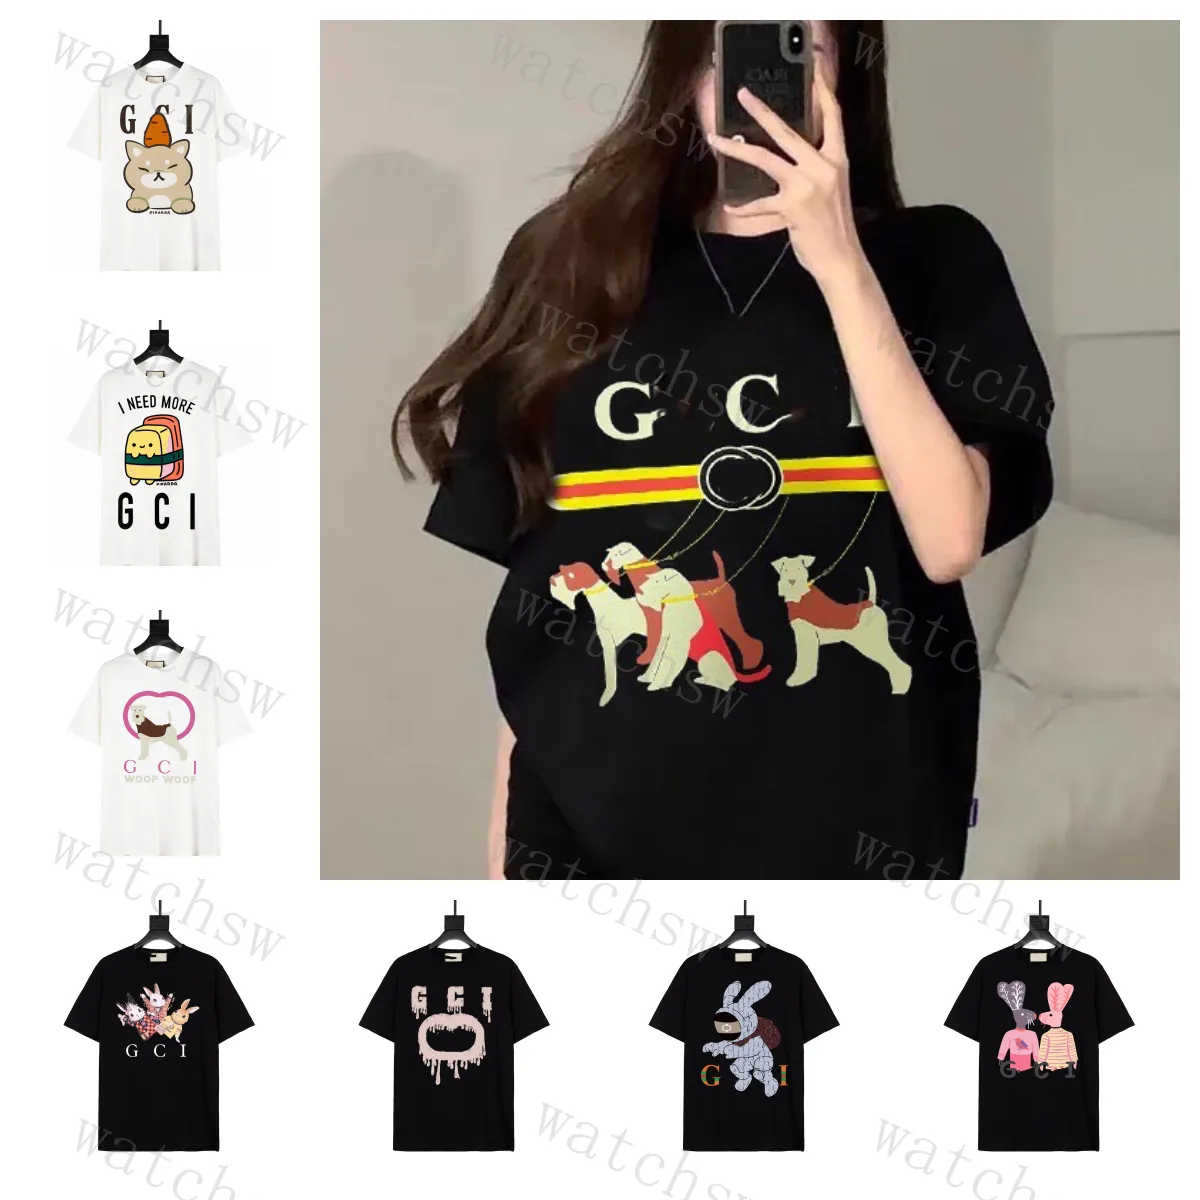 La colección Kawaii de camisetas con cuello redondo y estampado Alphabet diseña vibrantes camisetas inspiradas en anime y animales para hombres y mujeres con elementos impresos o bordados.